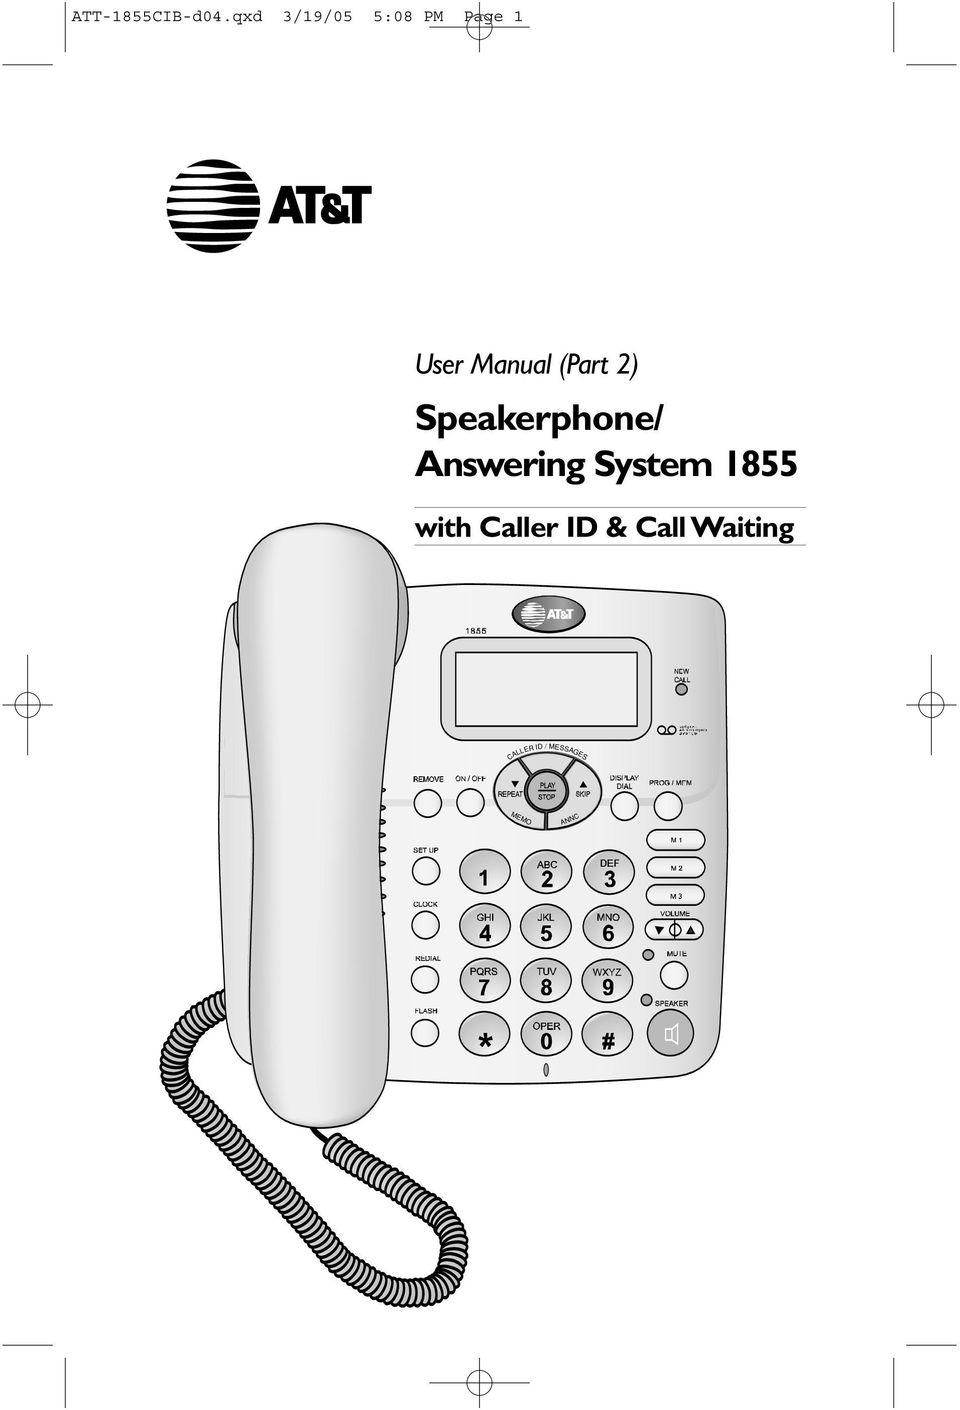 Manual (Part 2) Speakerphone/